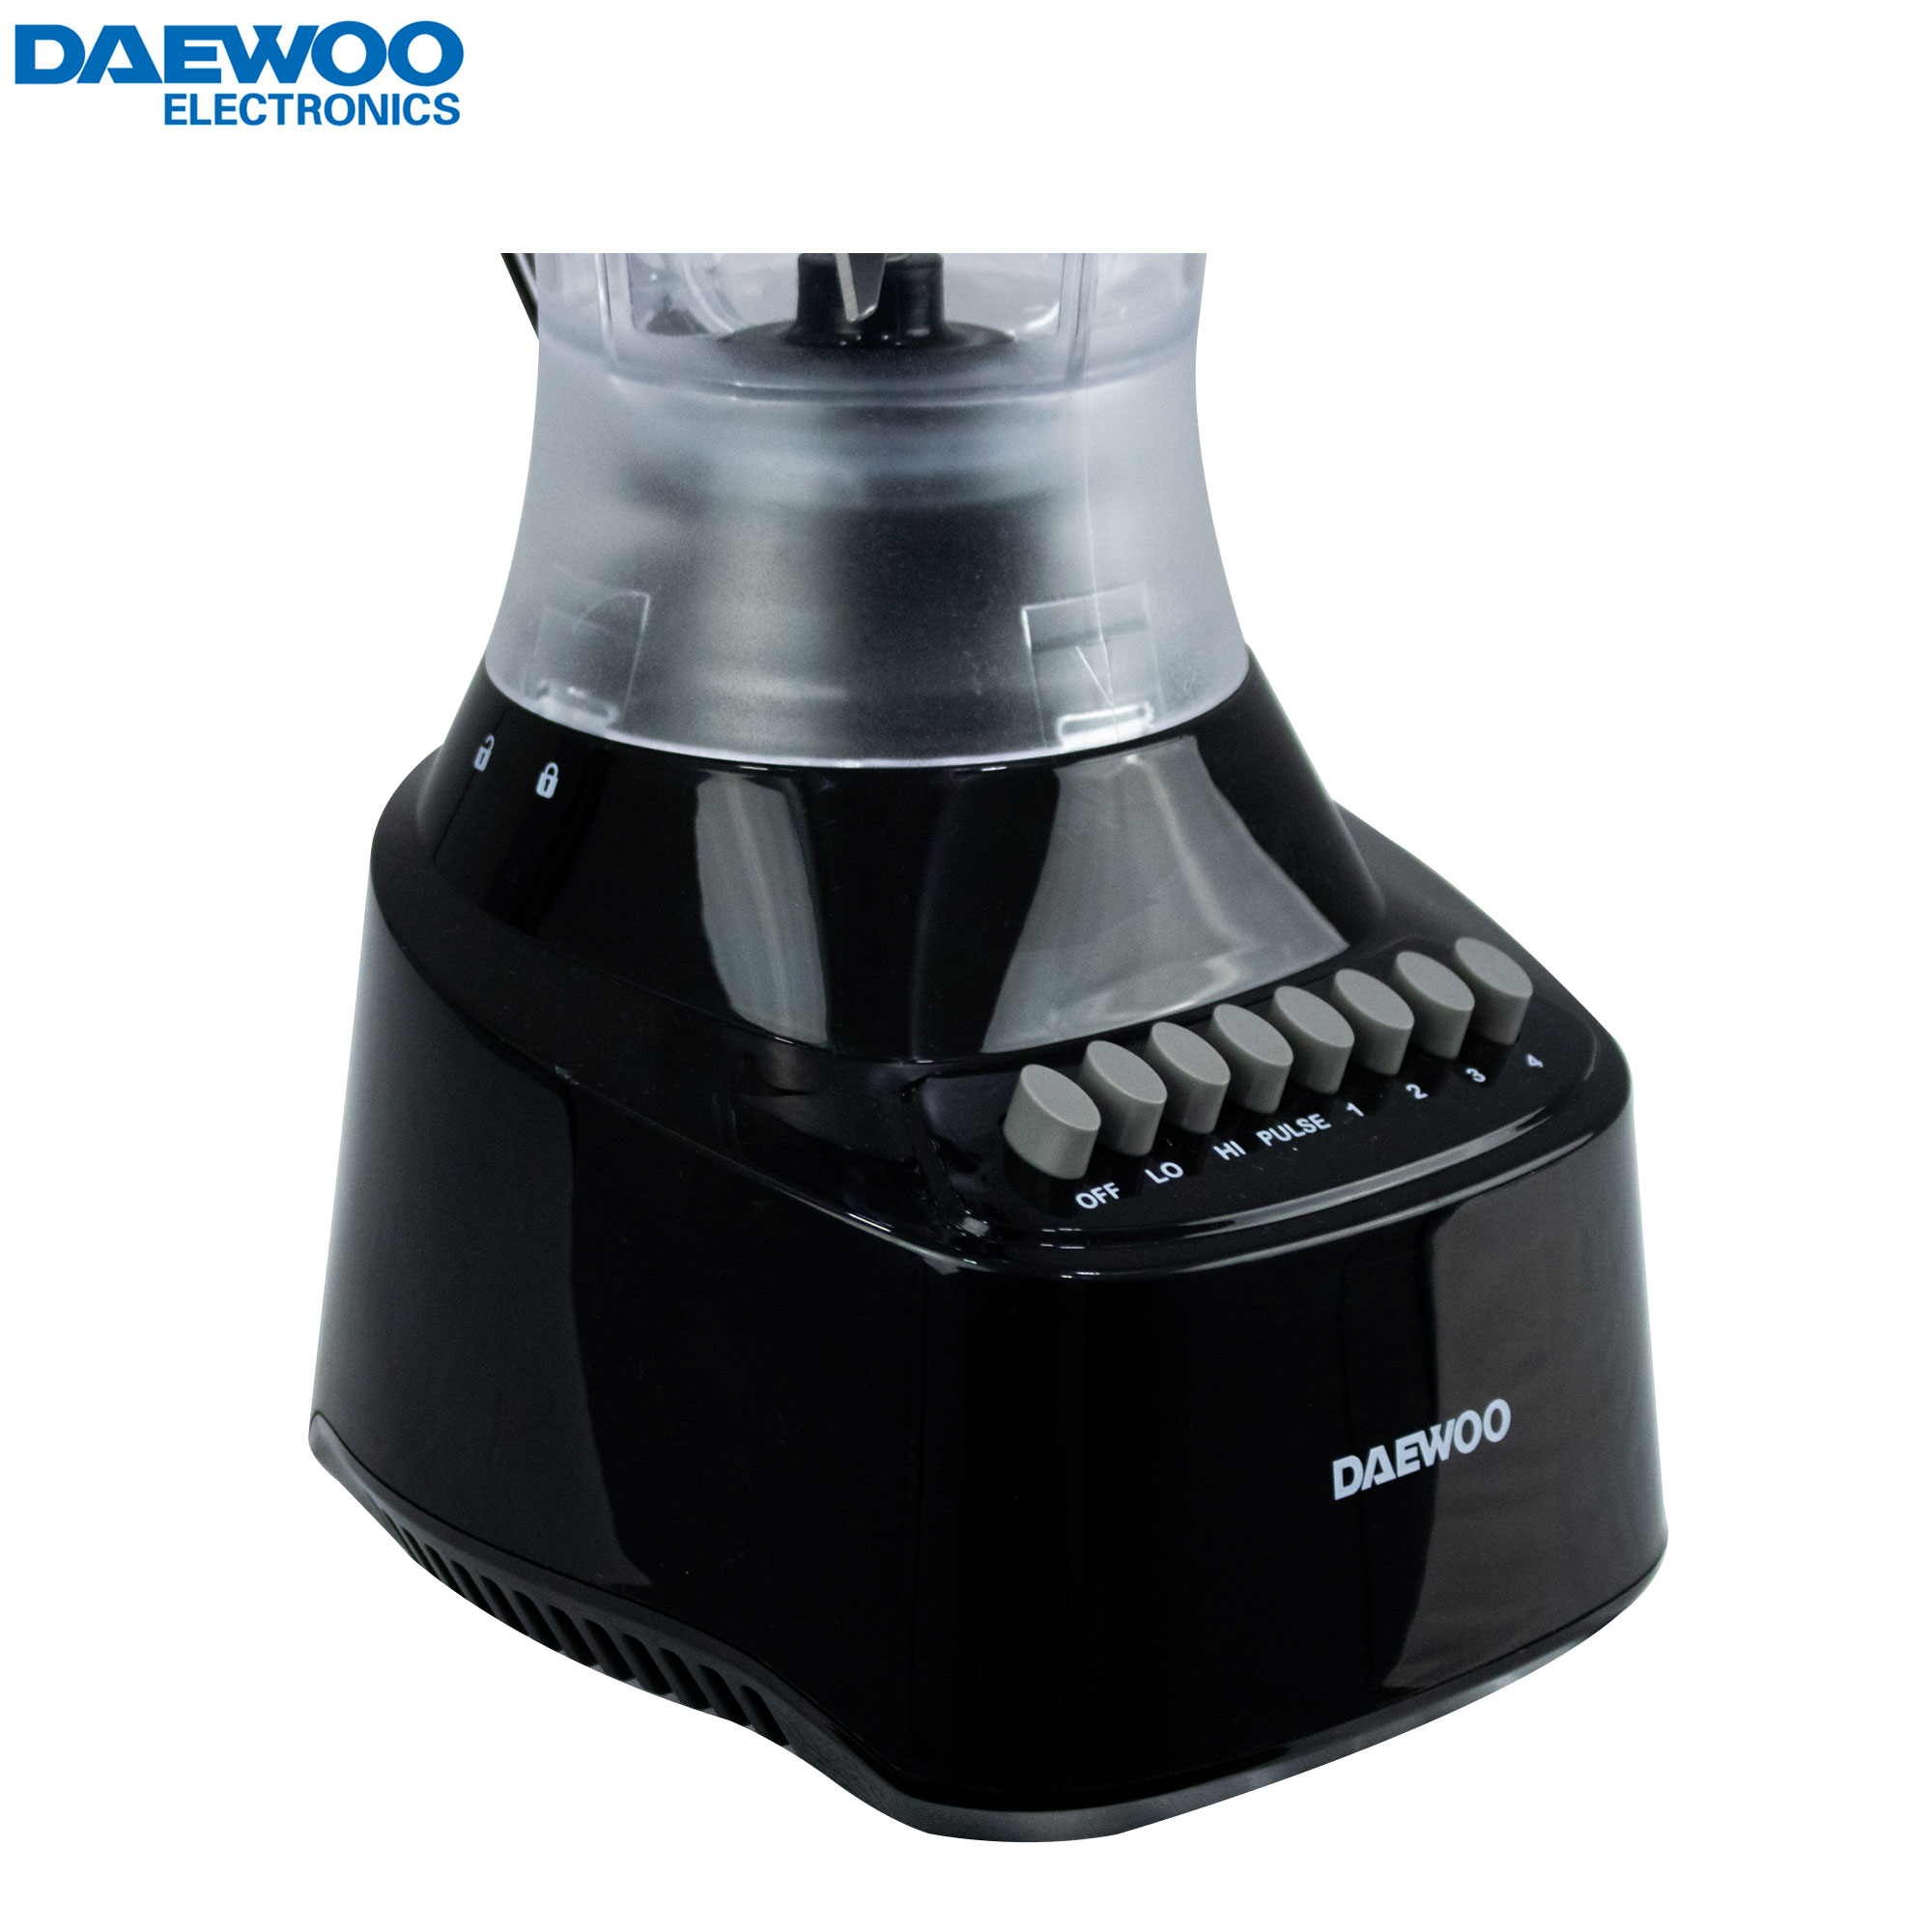 Procesador de alimentos Daewoo - Multimax Store